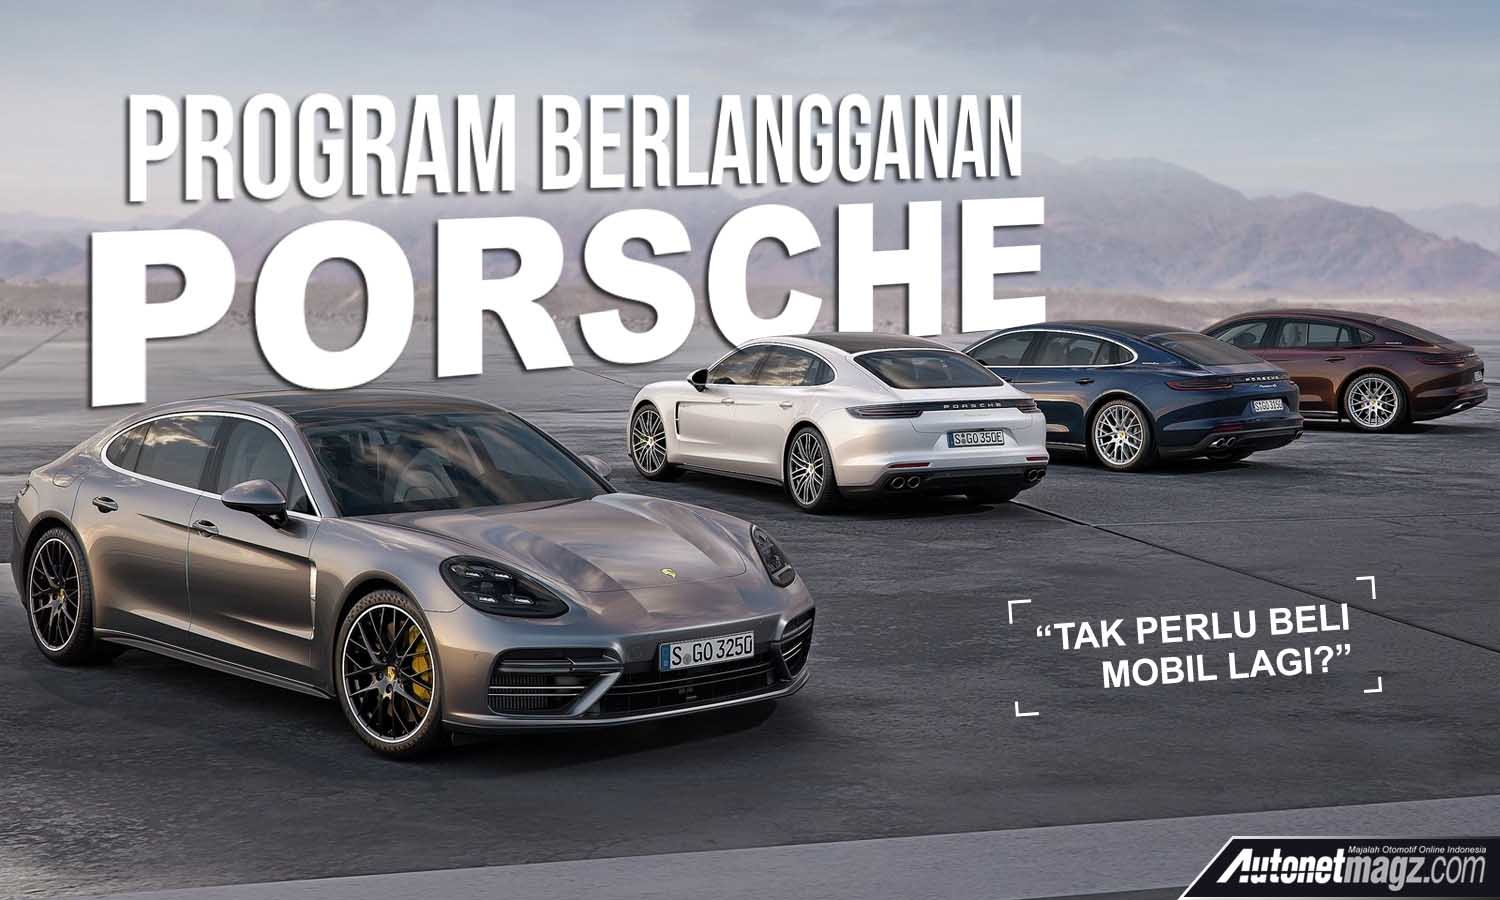 Berita, porsche berlangganan: Porsche Luncurkan Program Berlangganan Mobil, Tidak Perlu Beli Untuk Punya Porsche